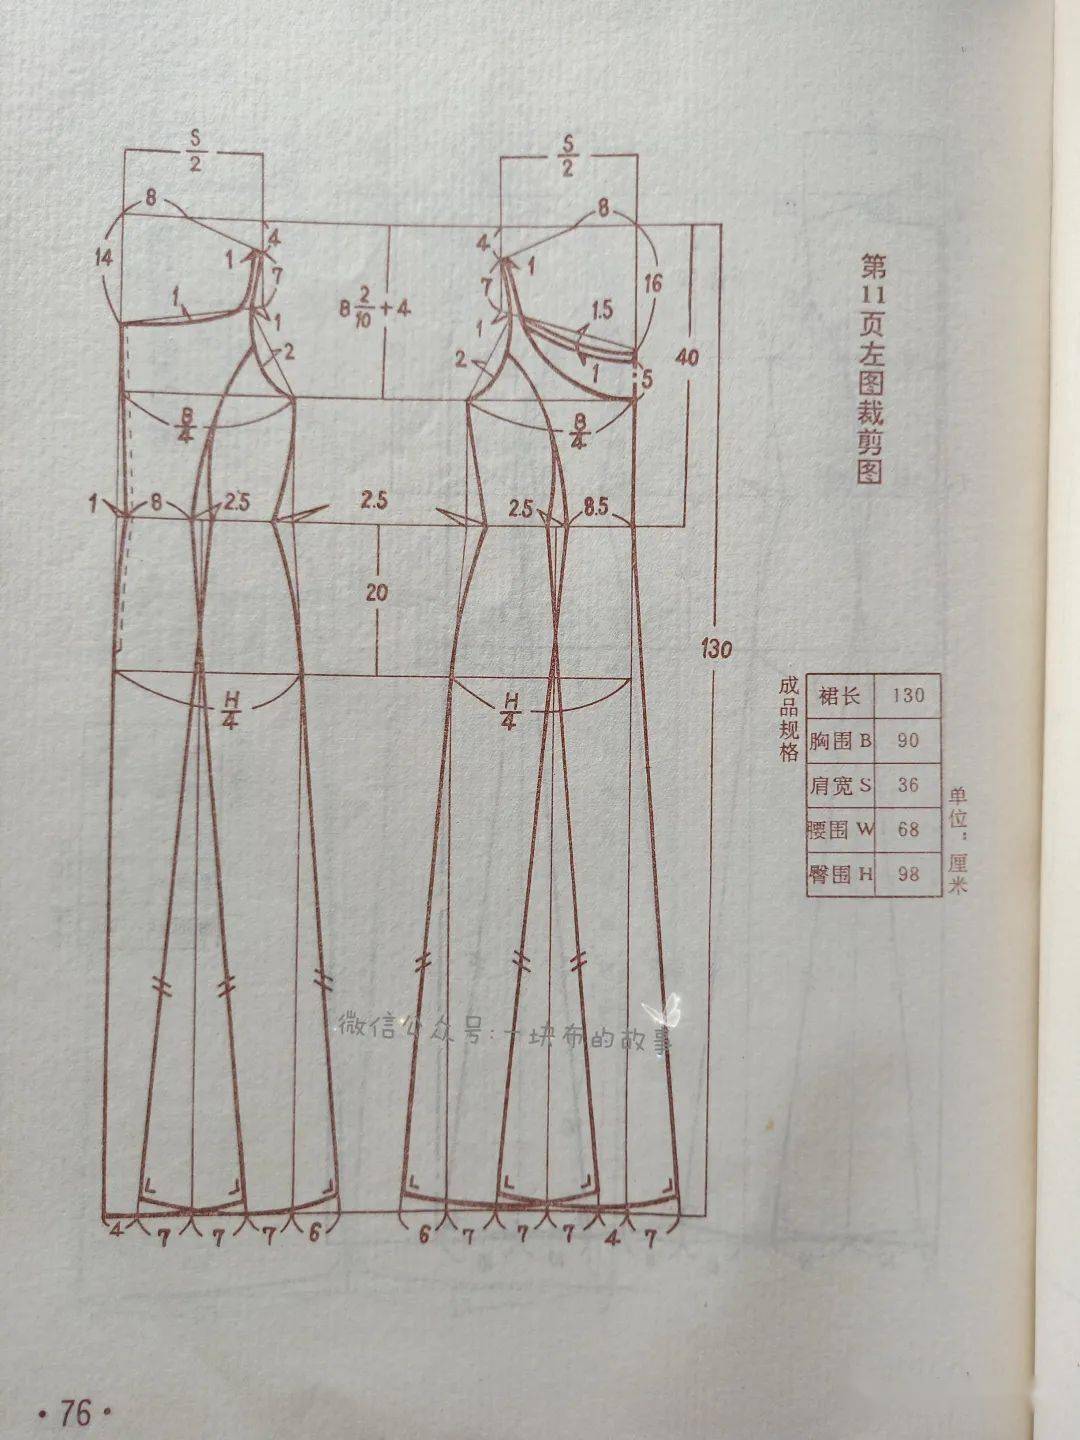 吊带连衣裙打板结构图图片